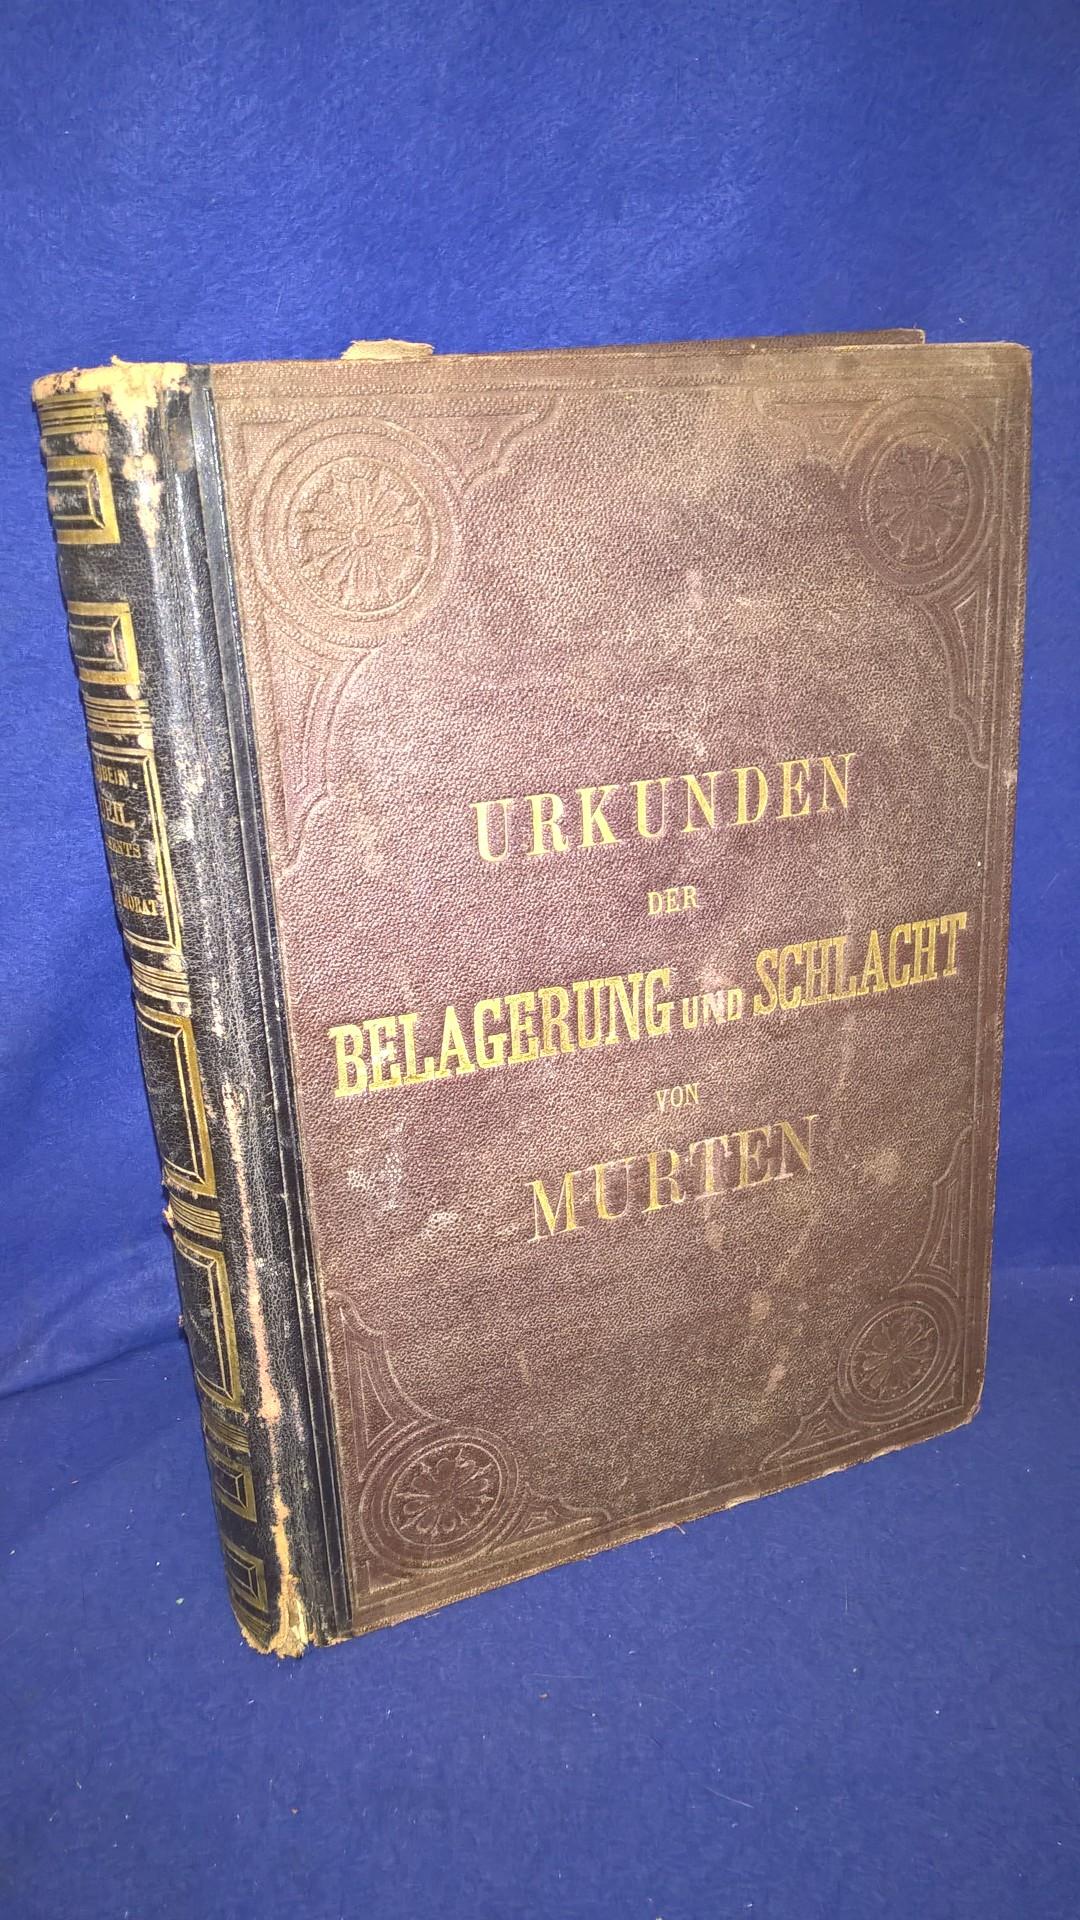 Die Urkunden der Belagerung und Schlacht von Murten im Auftrage des Festcomites auf die vierte Säkularfeier am 22. Juni 1876